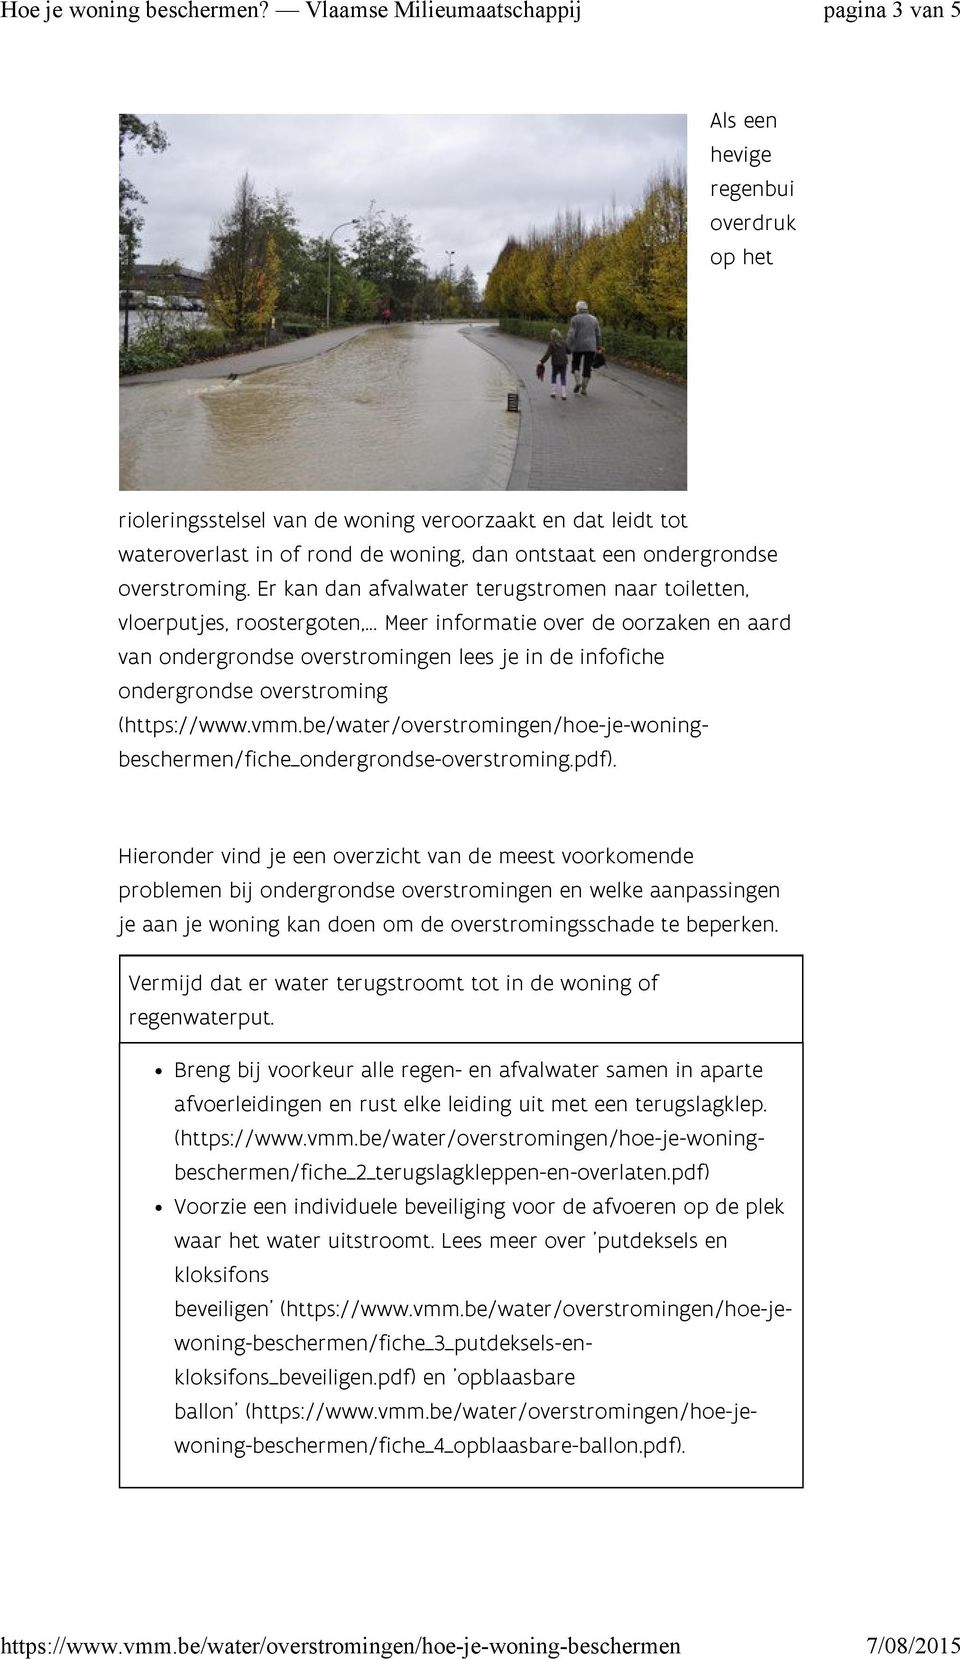 .. Meer informatie over de oorzaken en aard van ondergrondse overstromingen lees je in de infofiche ondergrondse overstroming (https://www.vmm.